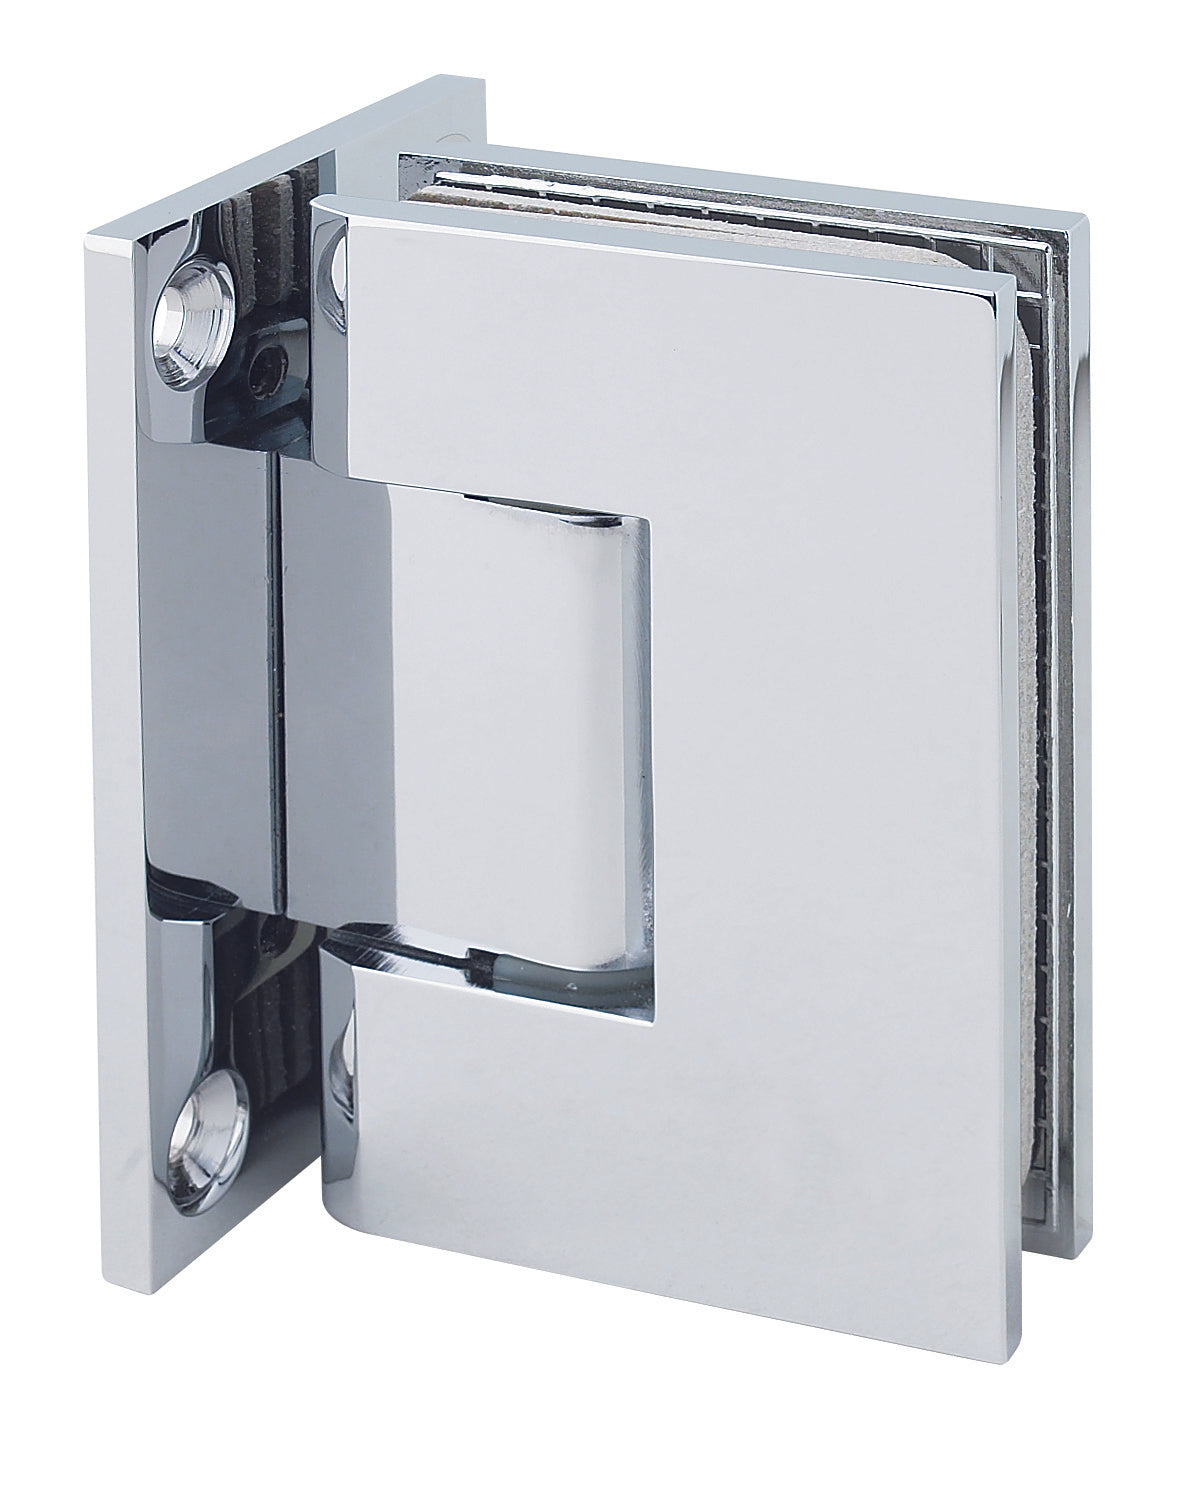 Rockwell Adjustable Square Corner Shower Hinge, Full Back Plate for heavy tempered Glass Shower Doors